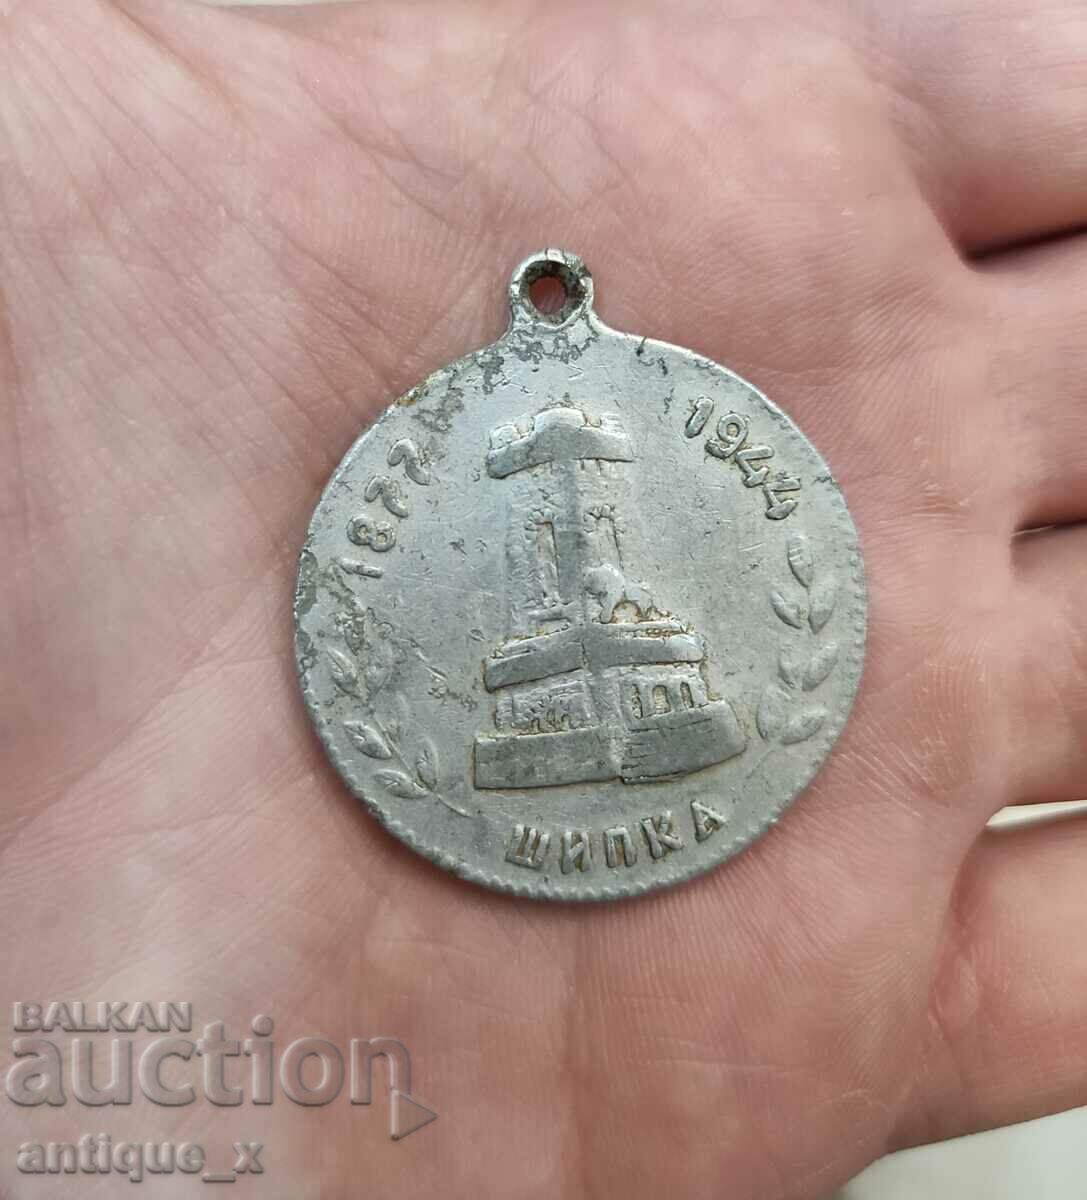 Medalie regală bulgară din aluminiu - Shipka - 1877-1944